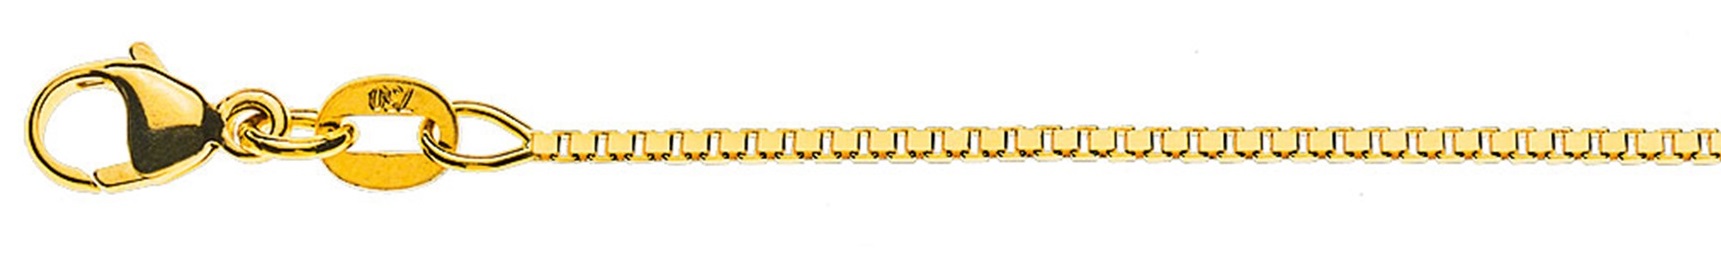 AURONOS Prestige Halskette Gelbgold 18K Venezianerkette diamantiert 60cm 1.1mm